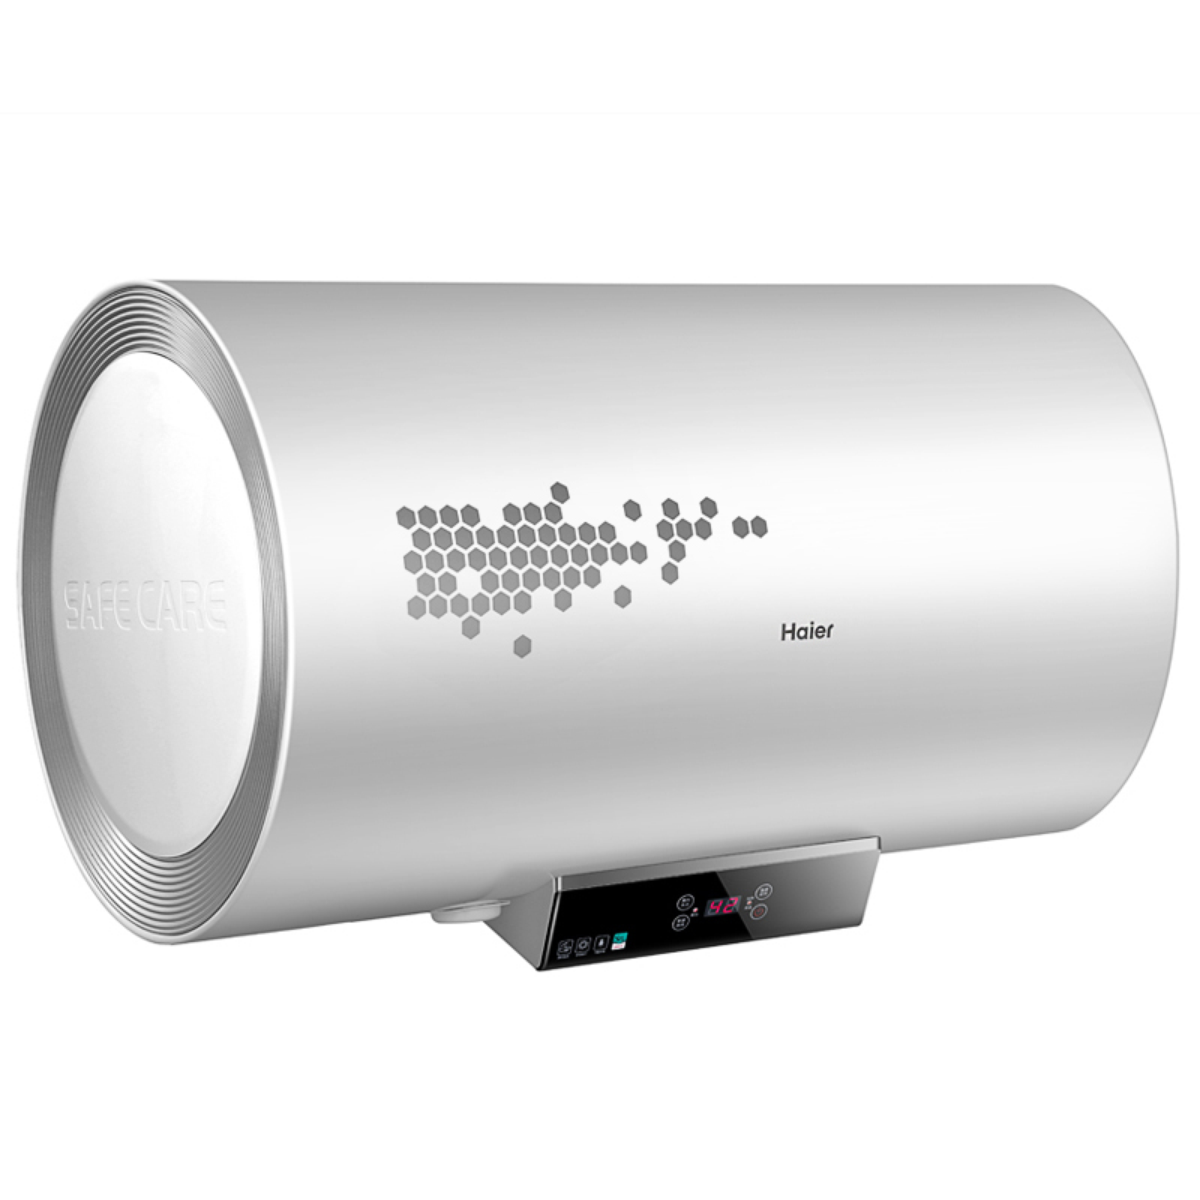 史密斯电热水器家用小型简约节能速热耐用热水器CEWH-80PA参数配置_规格_性能_功能-苏宁易购